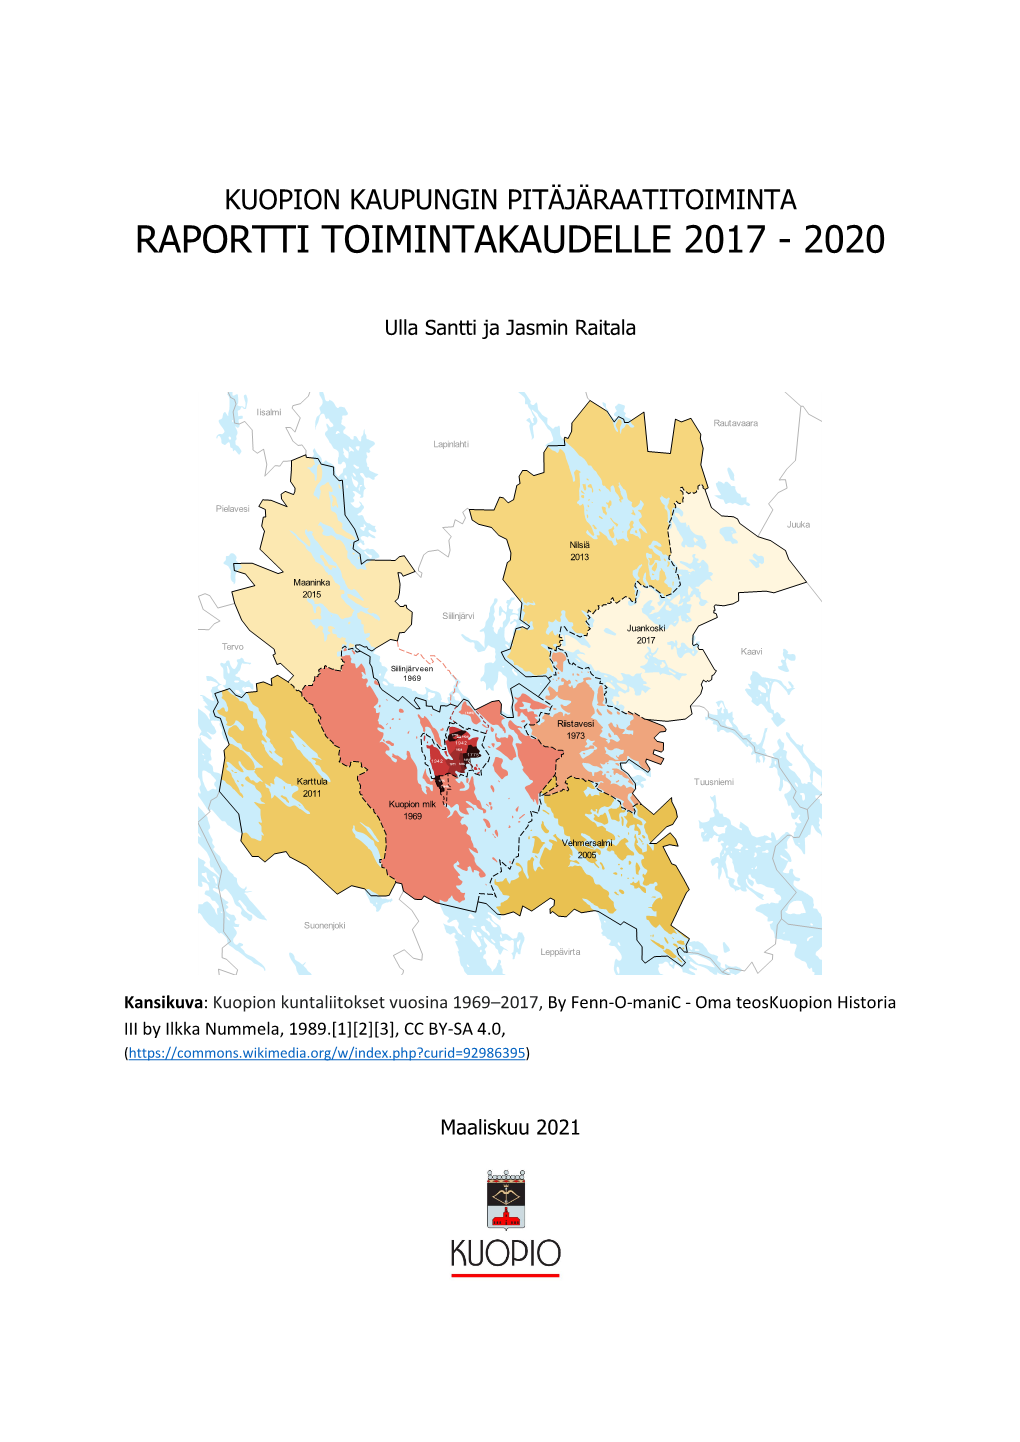 Kuopion Kaupungin Pitäjäraatitoiminta Raportti Toimintakaudelle 2017 - 2020